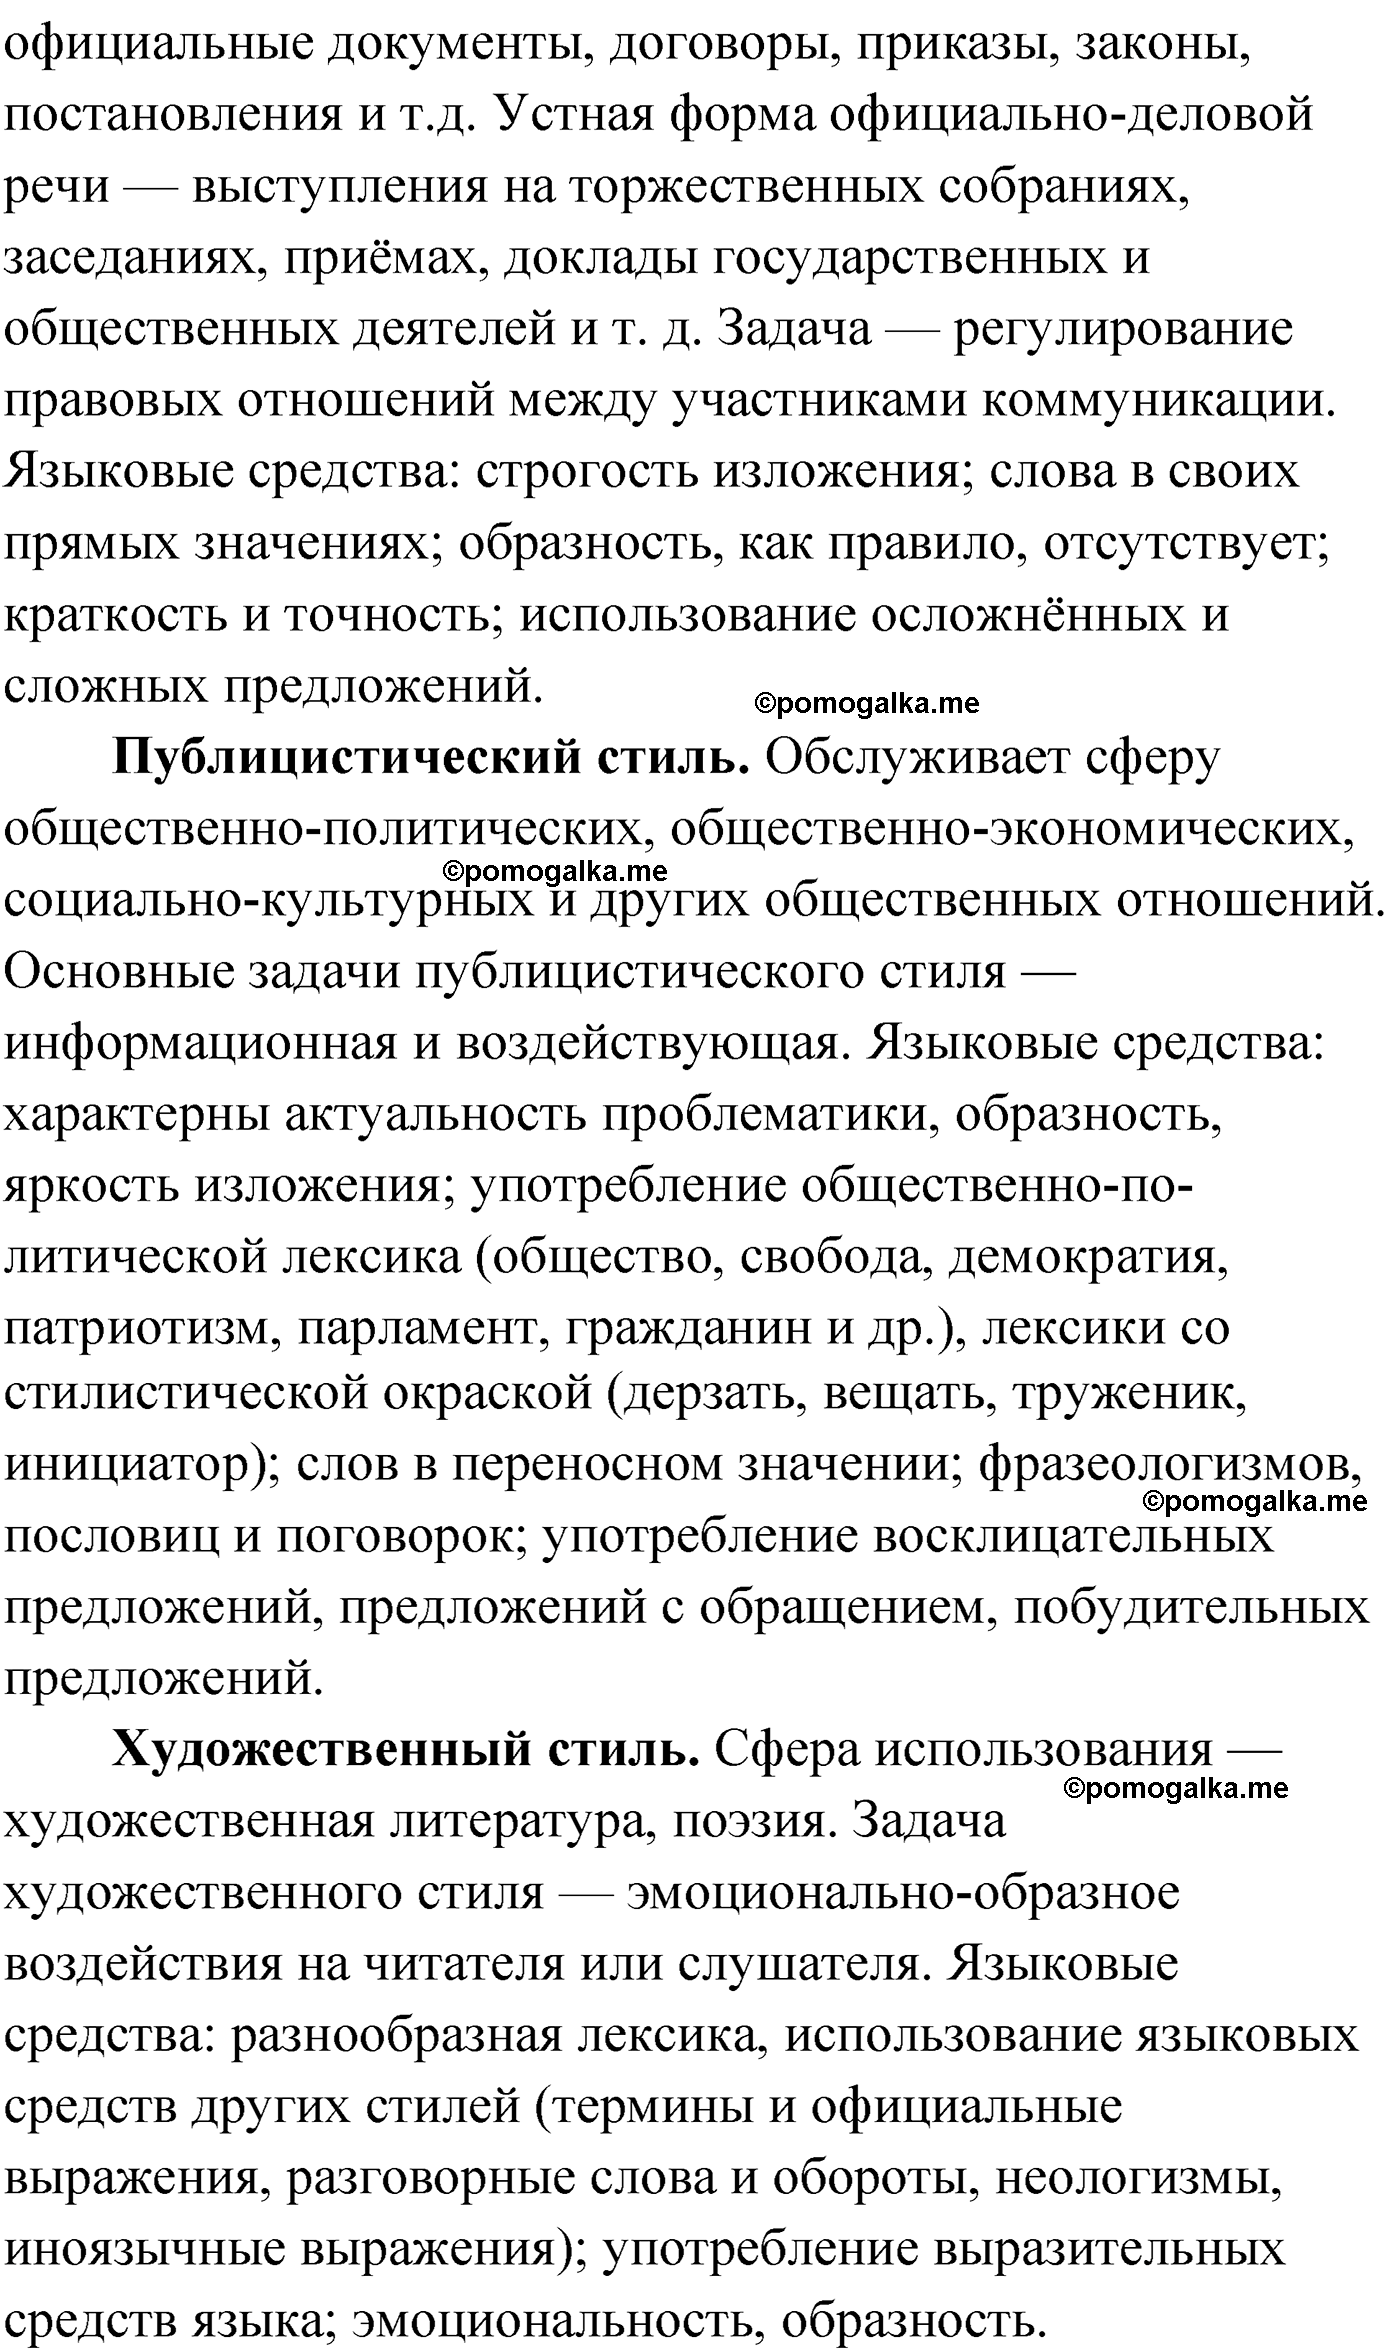 Проверь себя, Страница 30 русский язык 9 класс Мурина 2019 год